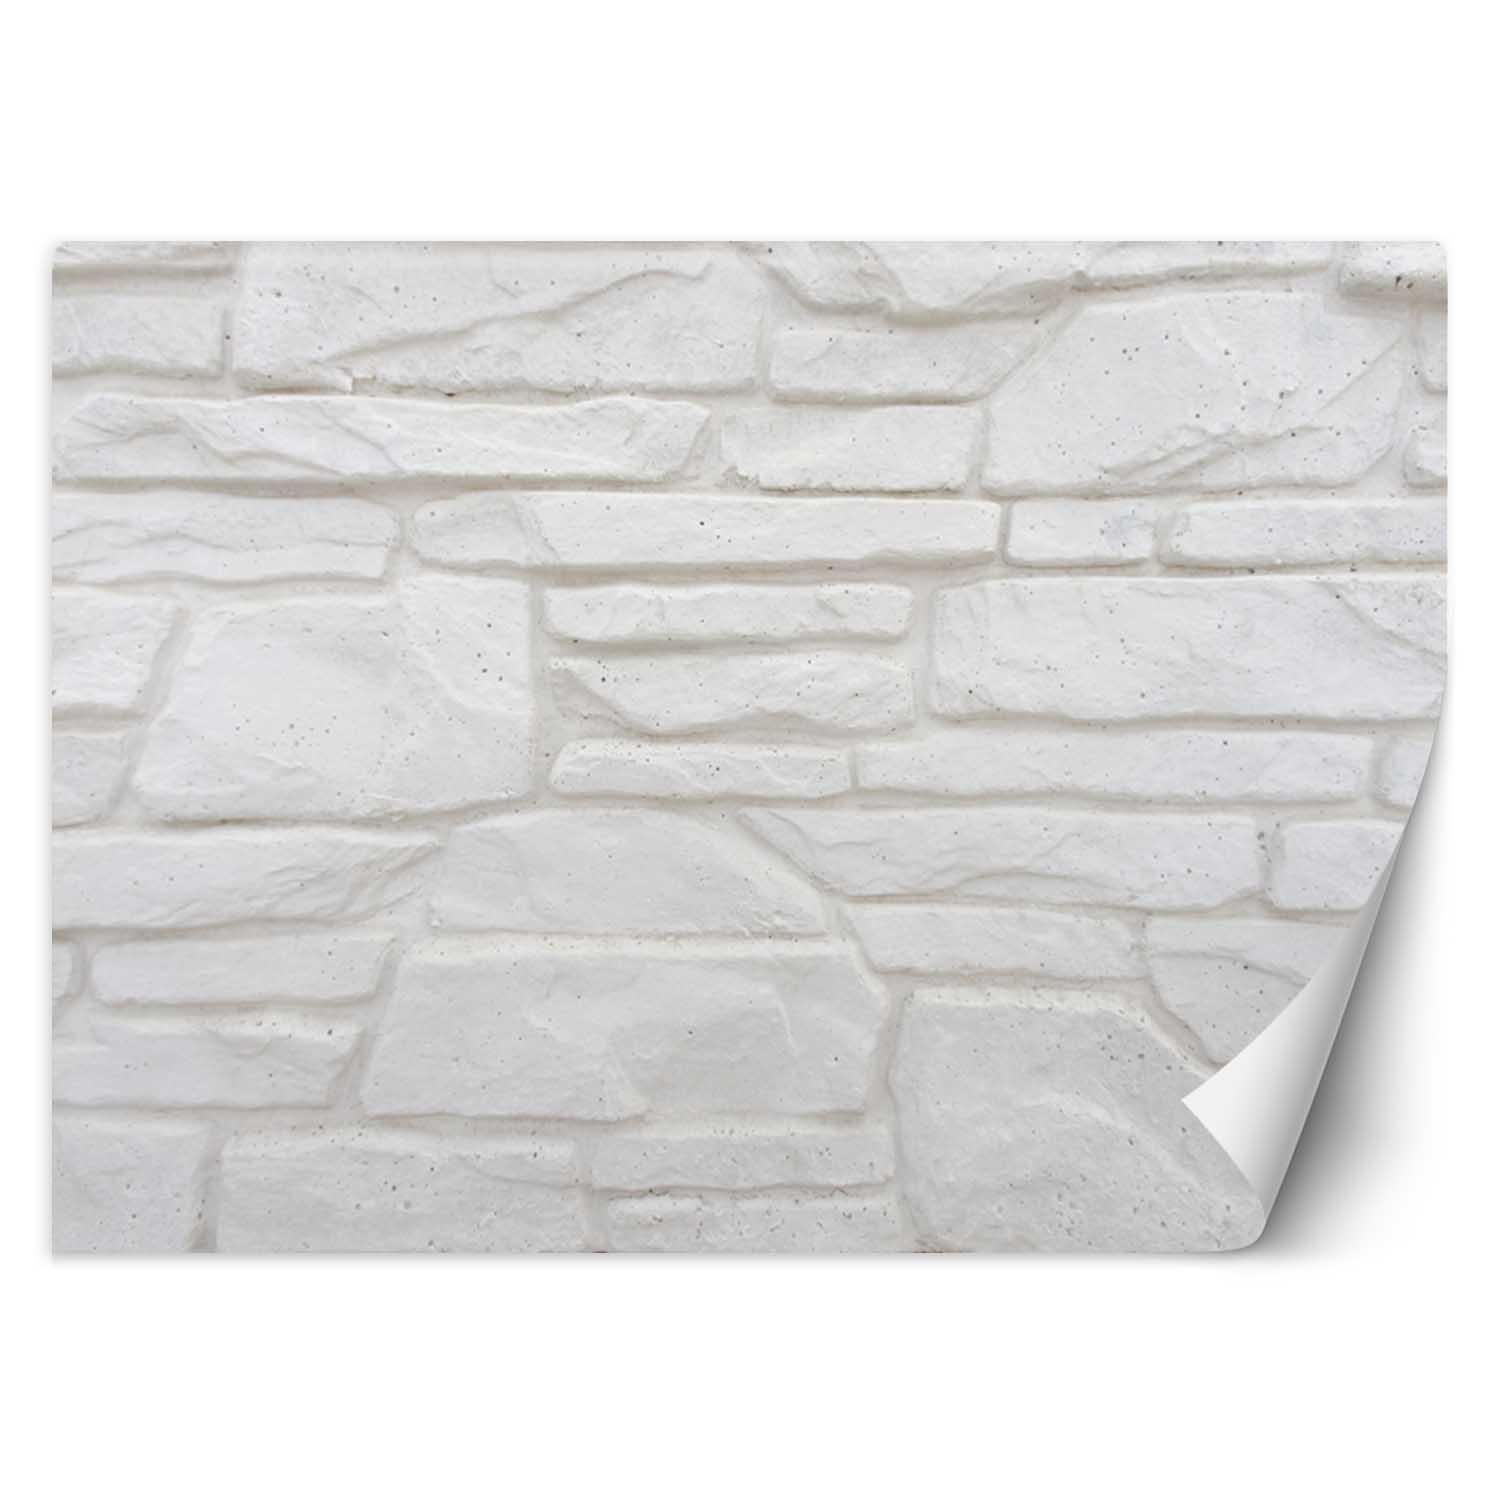 Trend24 – Behang – Witte Stenen Muur – Vliesbehang – Behang Woonkamer – Fotobehang – 350x245x2 cm – Incl. behanglijm